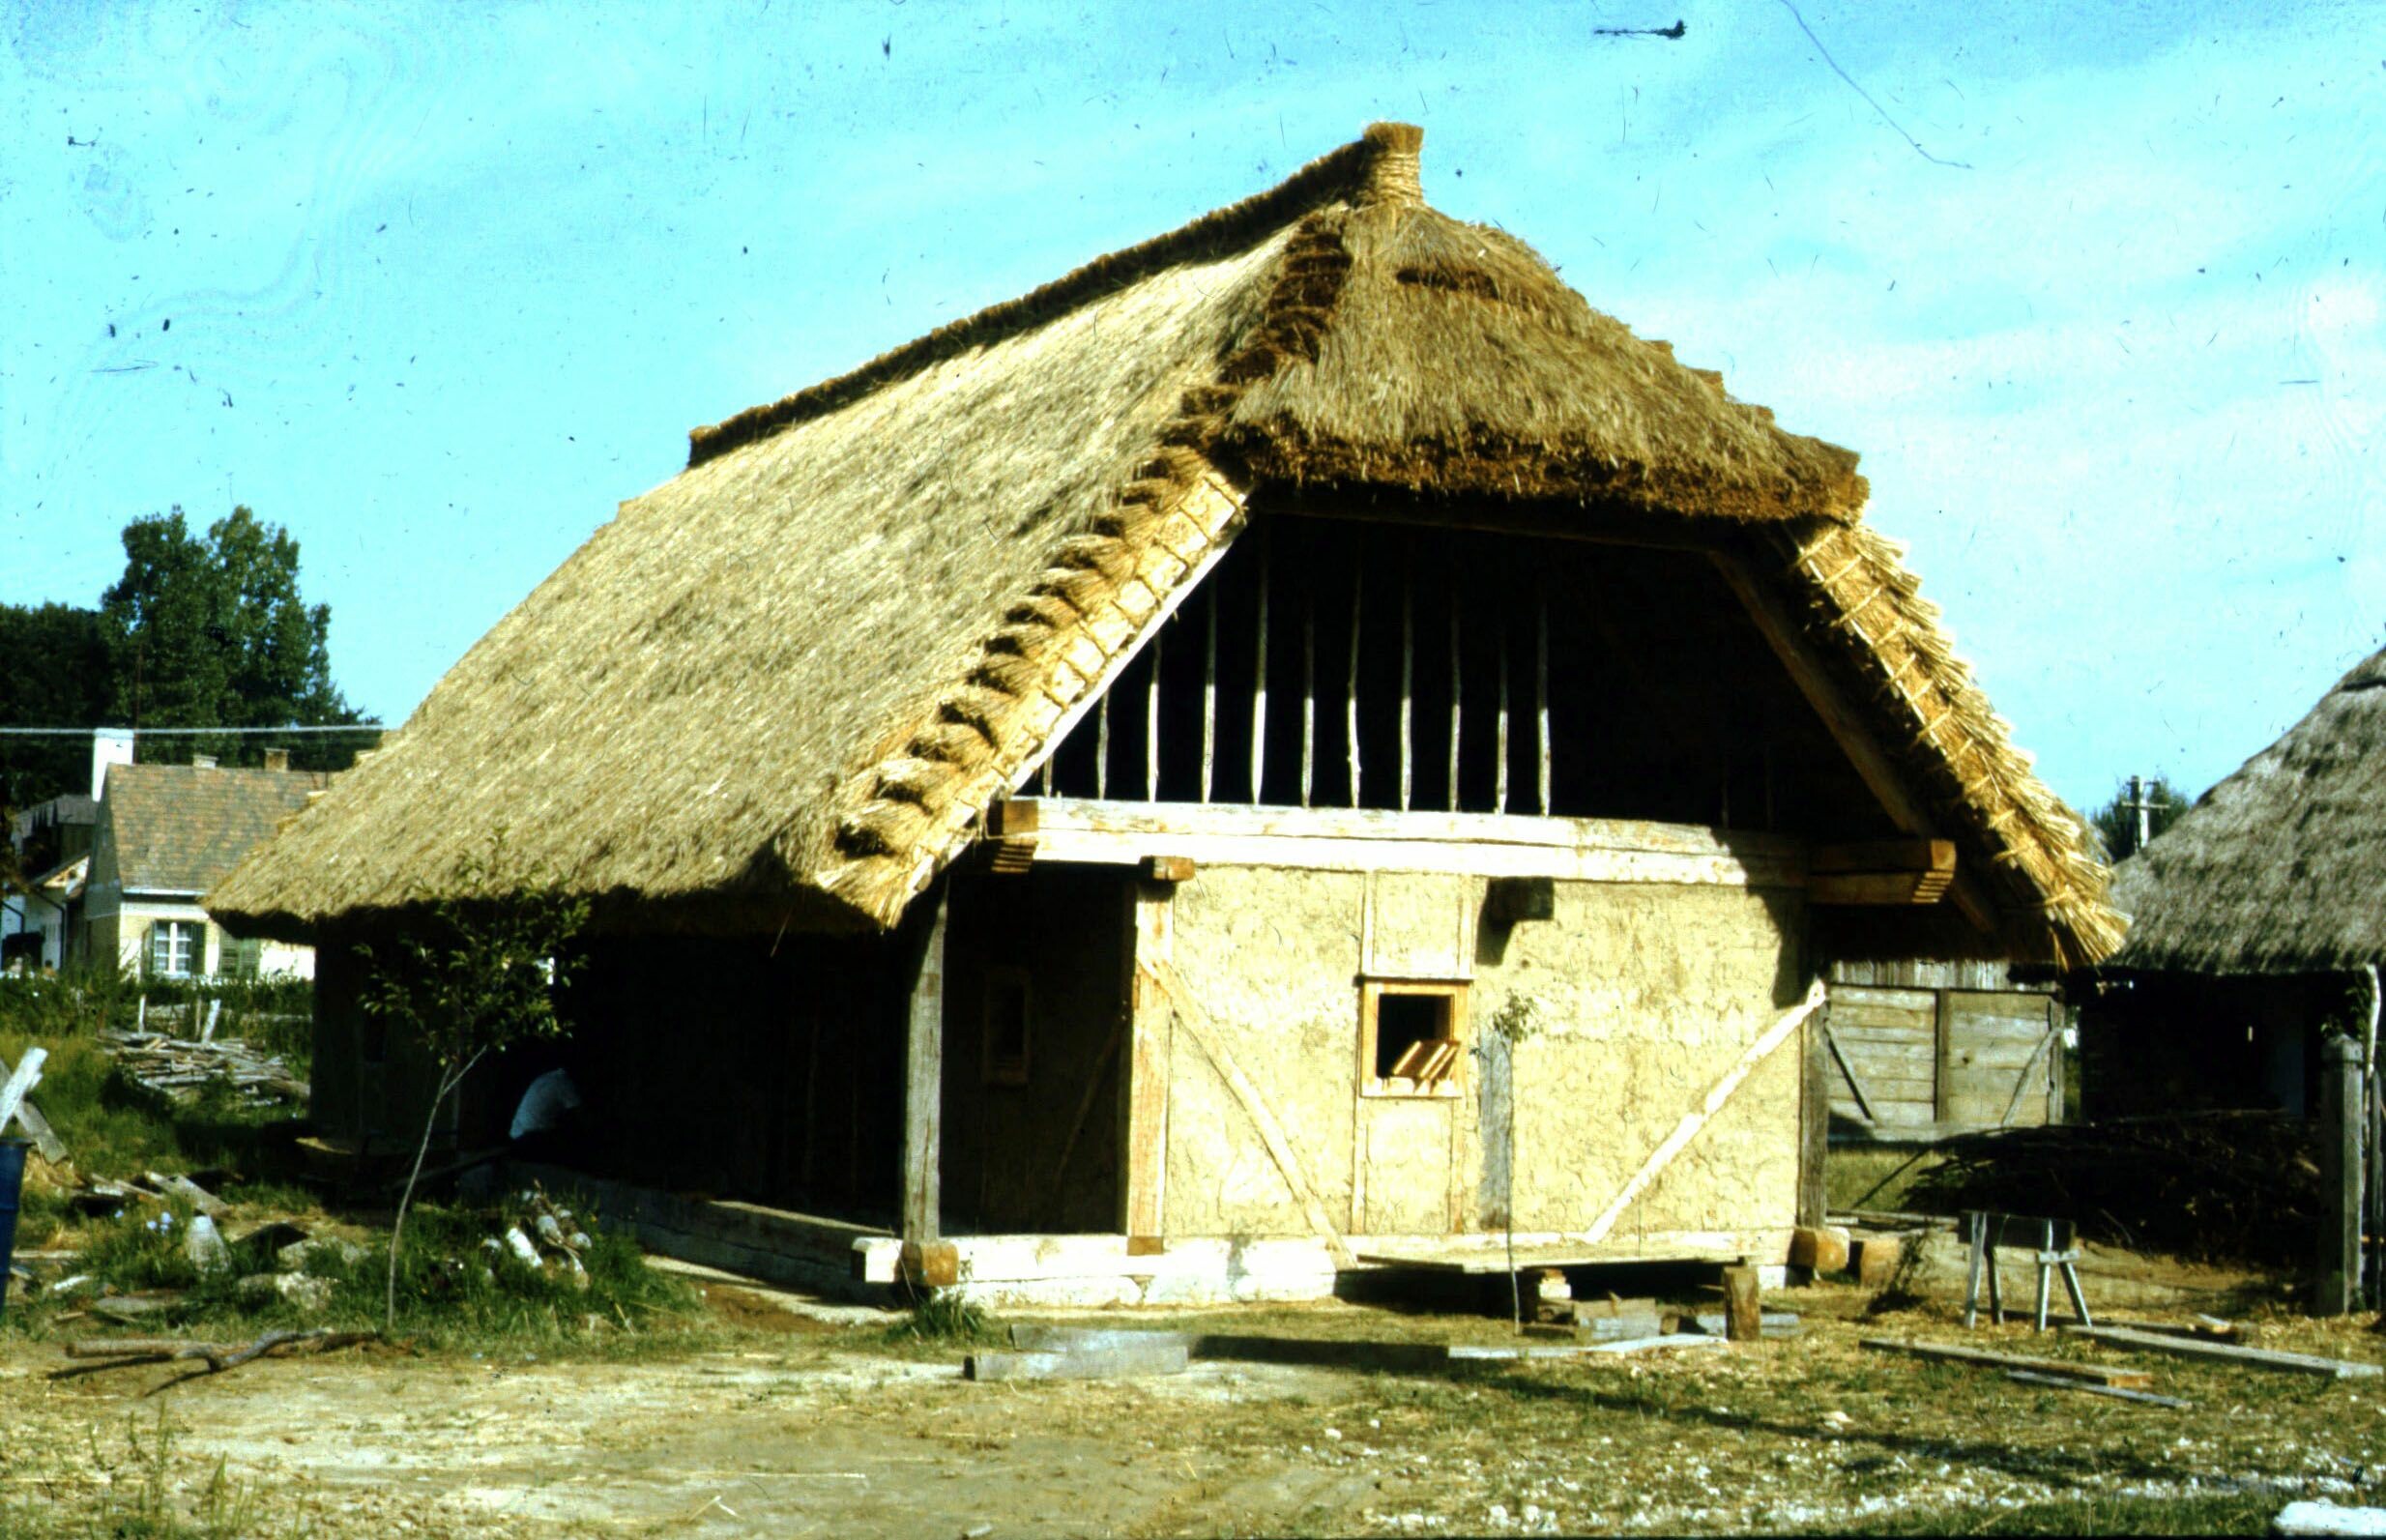 A somogyszobi lakóház nézete DK-ről. Szennai Szabadtéri Néprajzi Gyűjtemény. (Rippl-Rónai Múzeum CC BY-NC-ND)